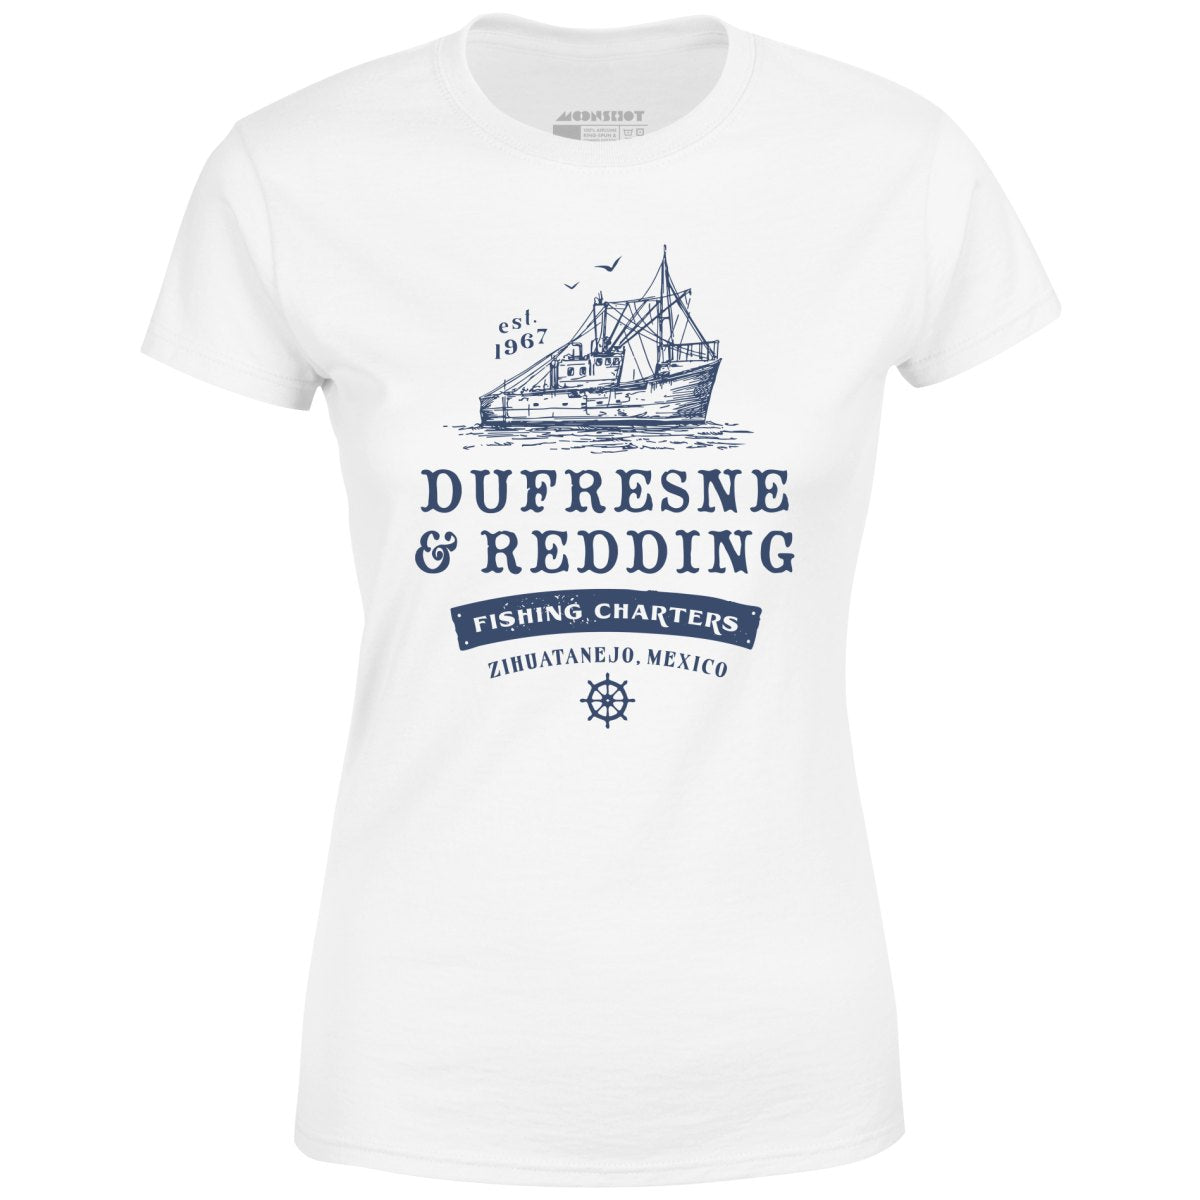 Dufresne & Redding Fishing Charters - Women's T-Shirt